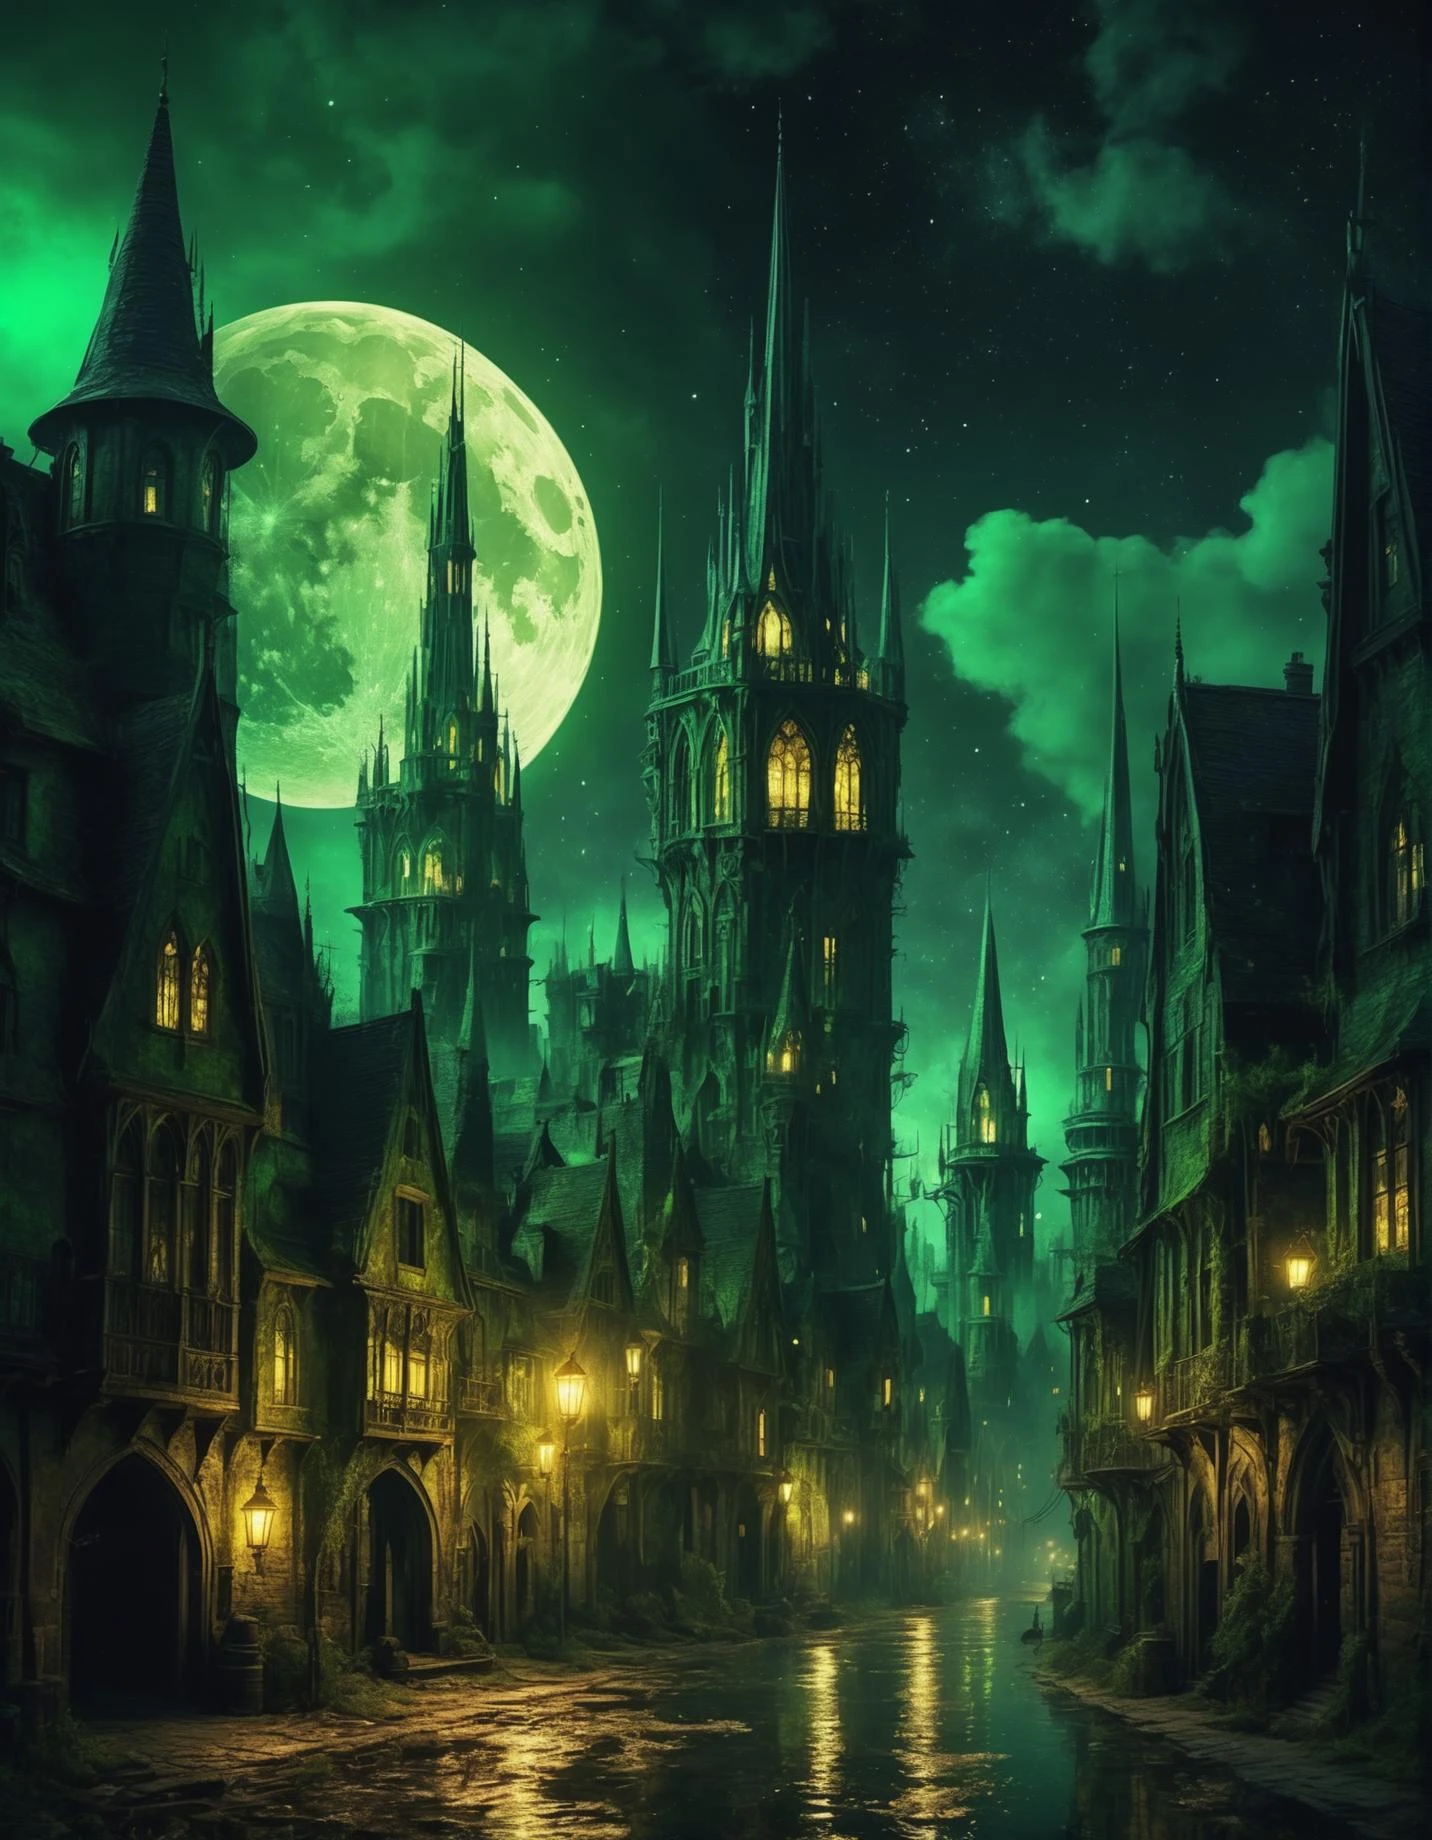 中世紀 高奇幻 塔樓 沼澤城市 魔法街道 金色黑暗 超現實主義 晴朗的夜空 沒有月亮 4k 數位藝術 高細節, 傑作  [歌德] [生動] [綠色煙霧燈] 神秘